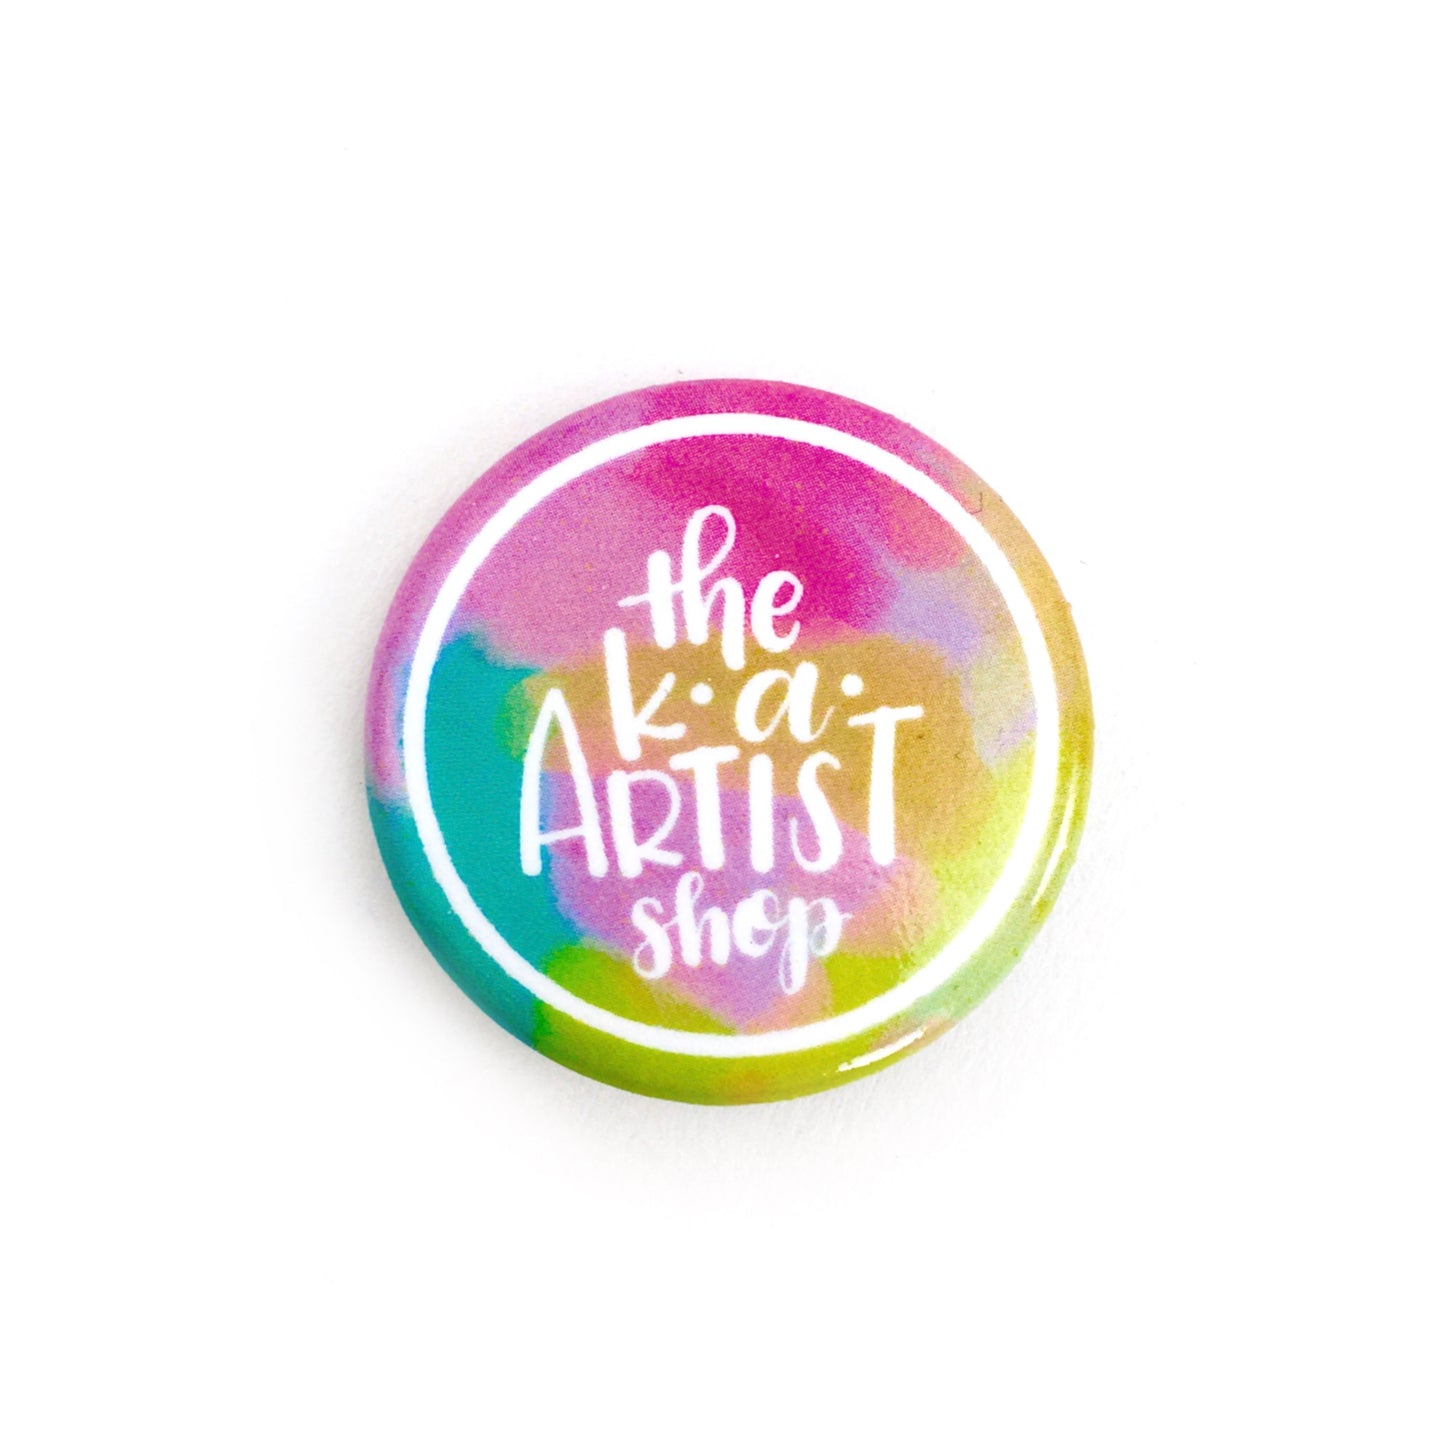 Artist Shop Button - by K. A. Artist Shop - K. A. Artist Shop